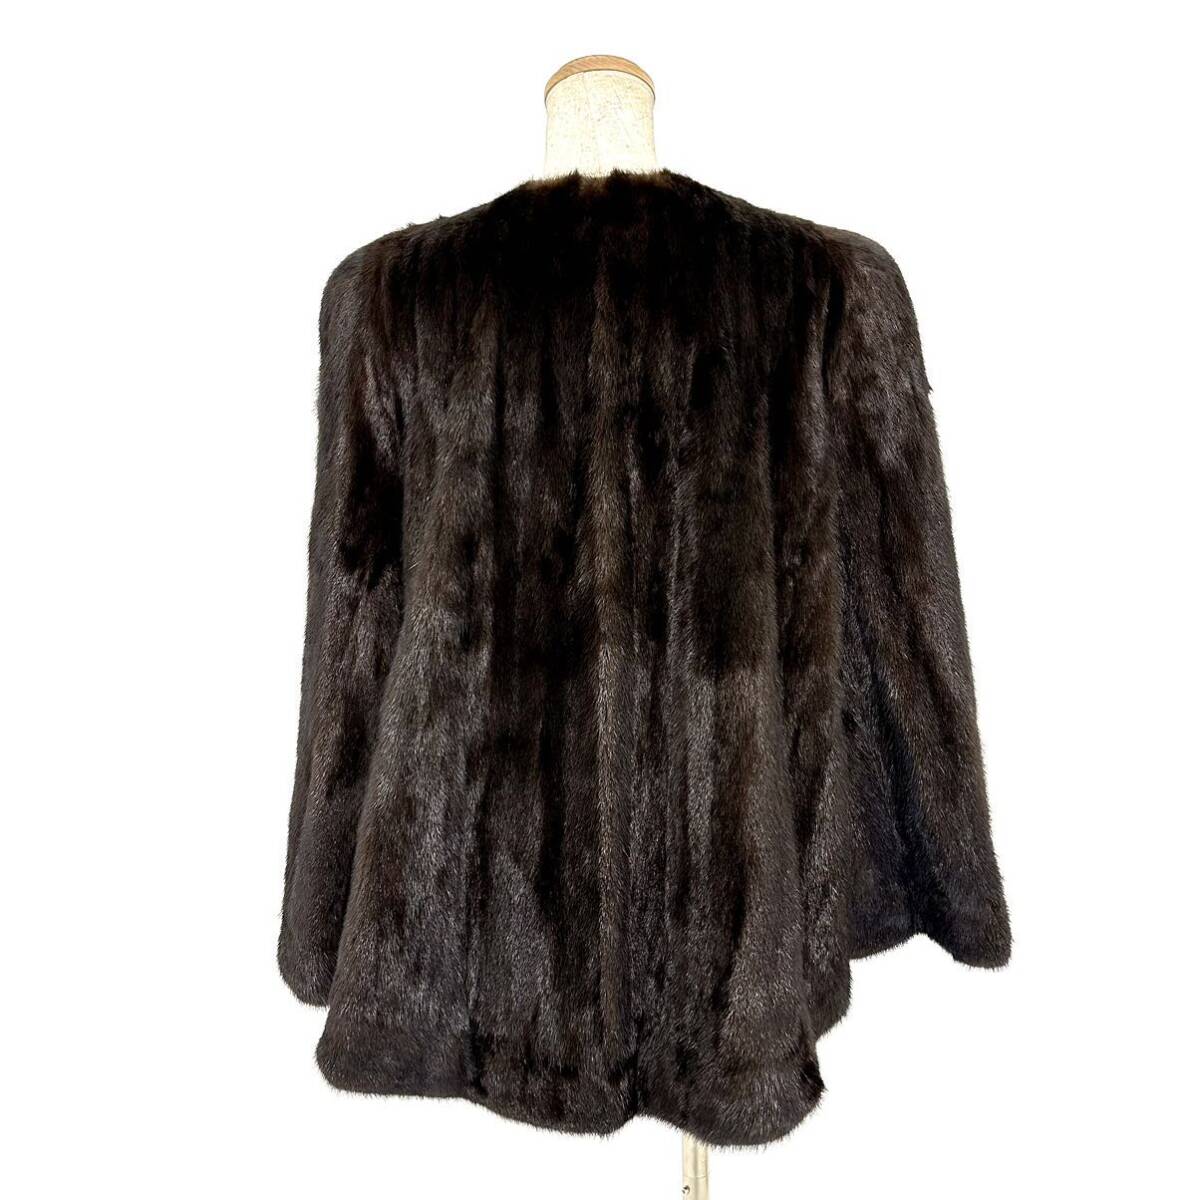 【貂商】h2801 ブラックミンク ハーフコート デザインコート セミロング ミンクコート 貂皮 mink身丈 約70cmの画像3